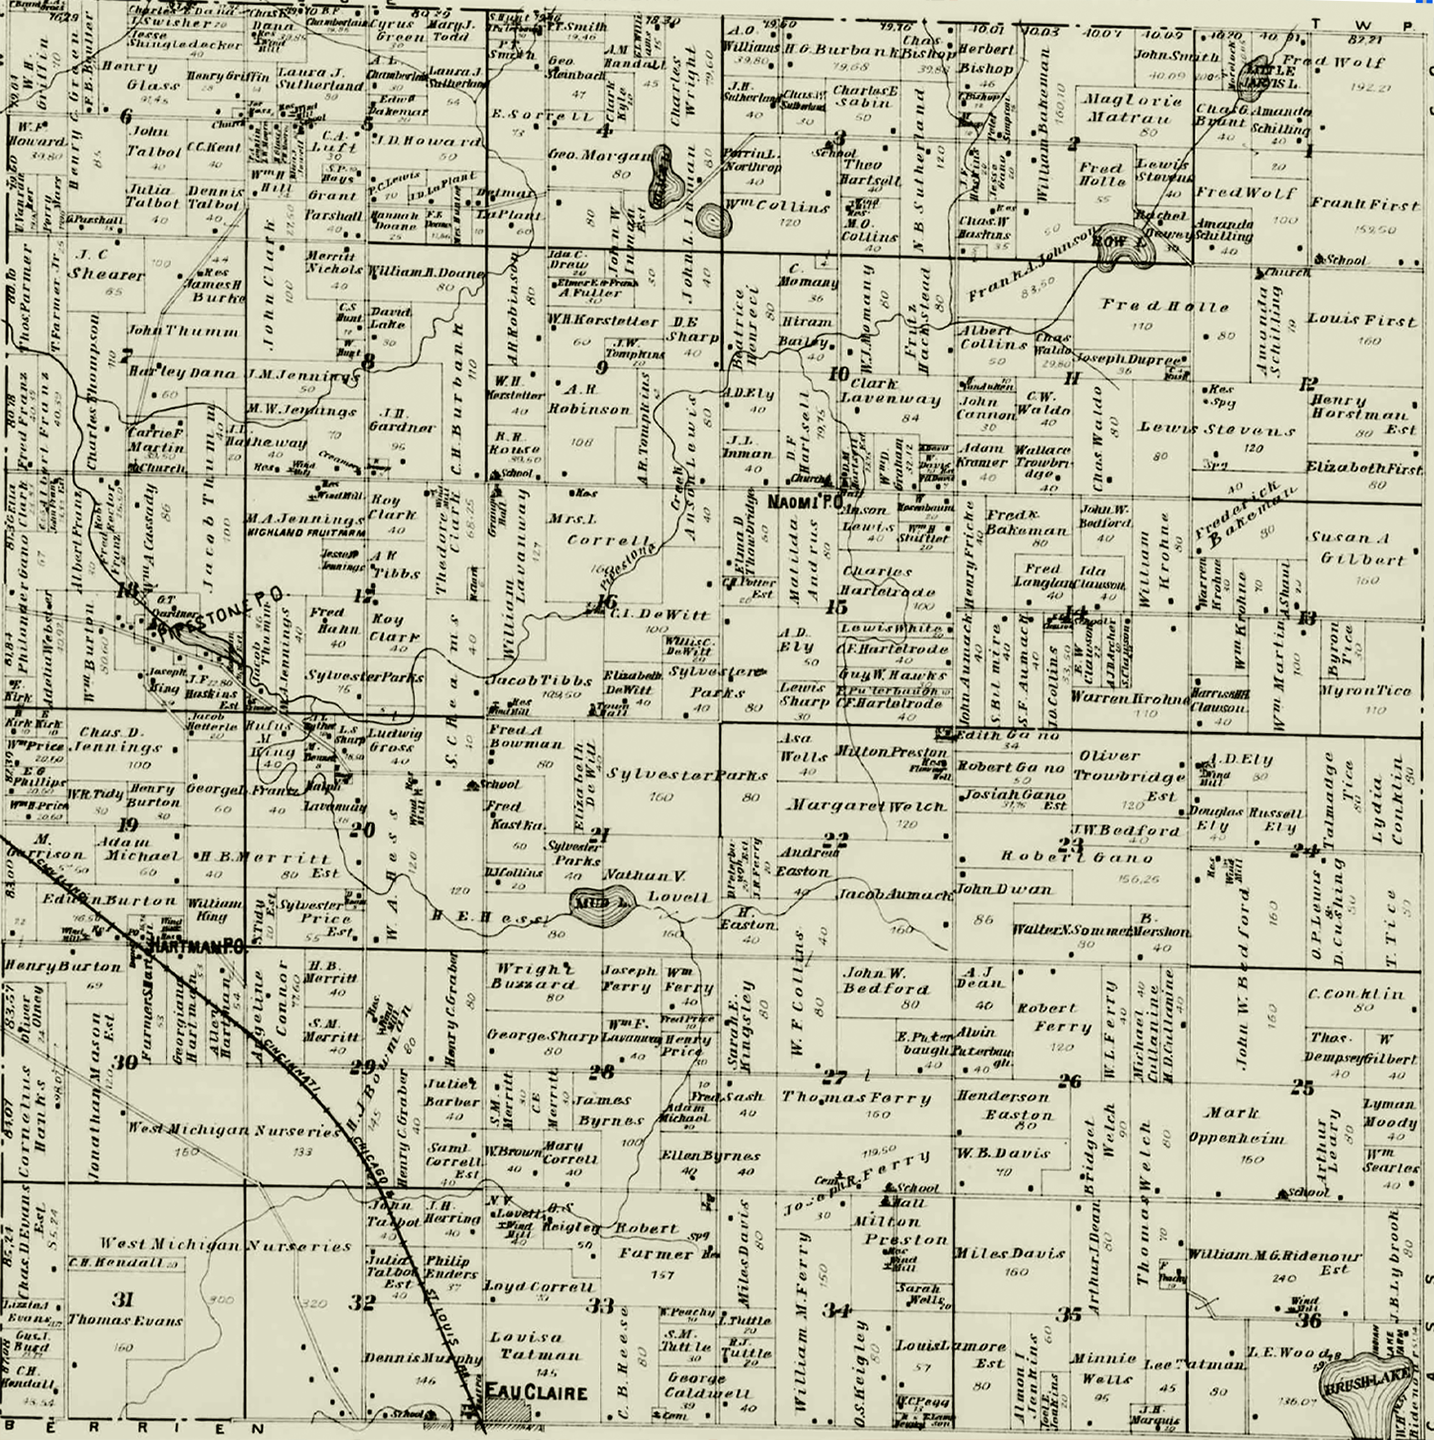 1903 Pipestone Township, Michigan landownership map